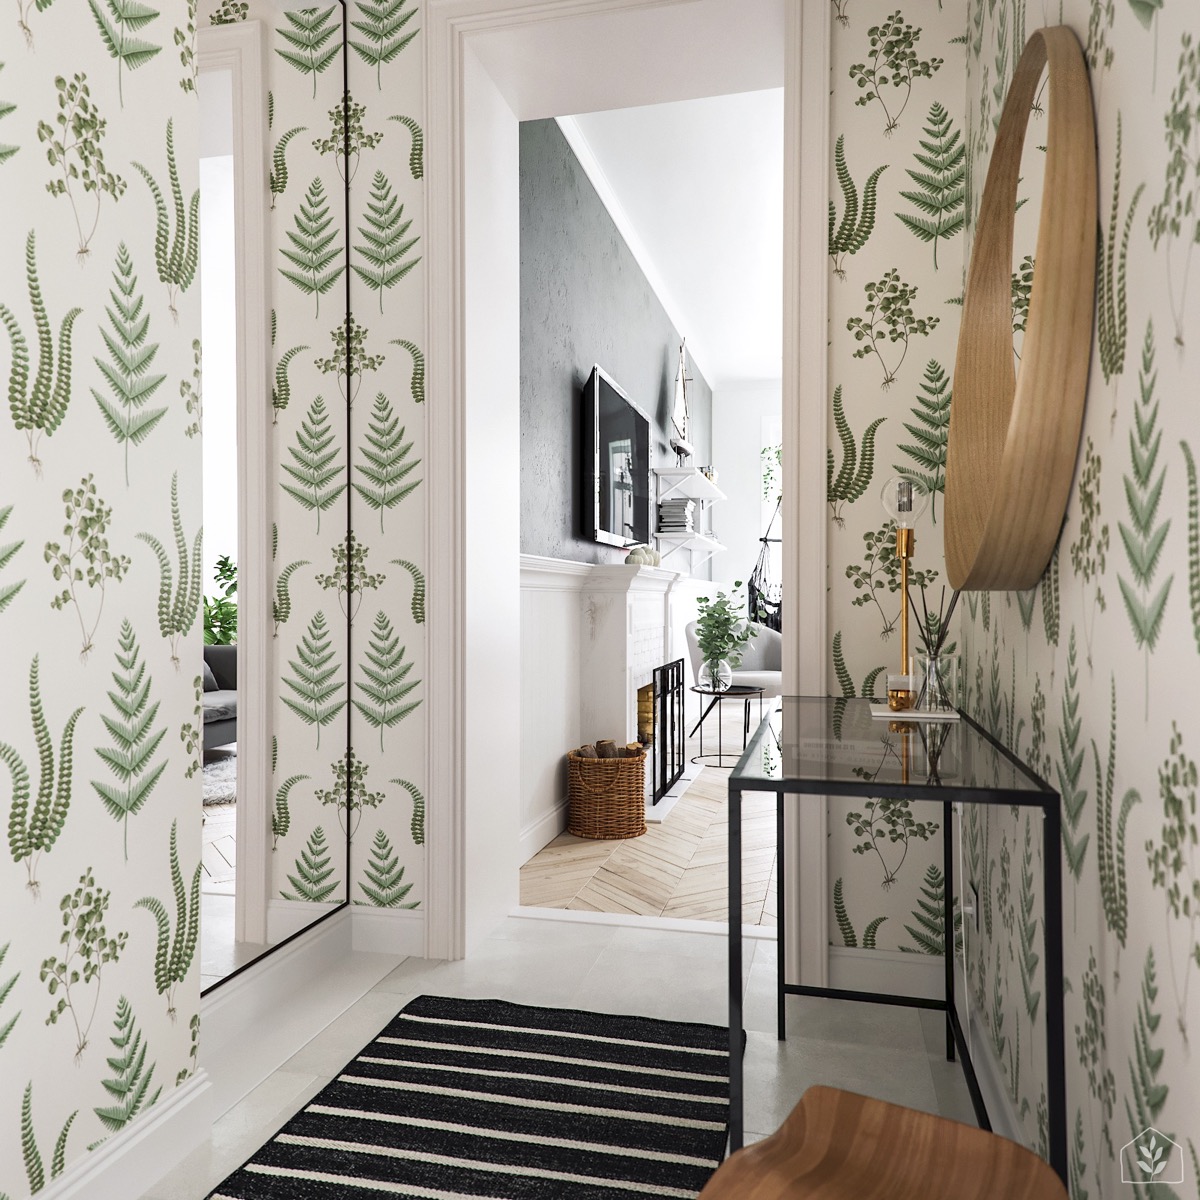 绿植点缀的北欧风格家居装饰设计